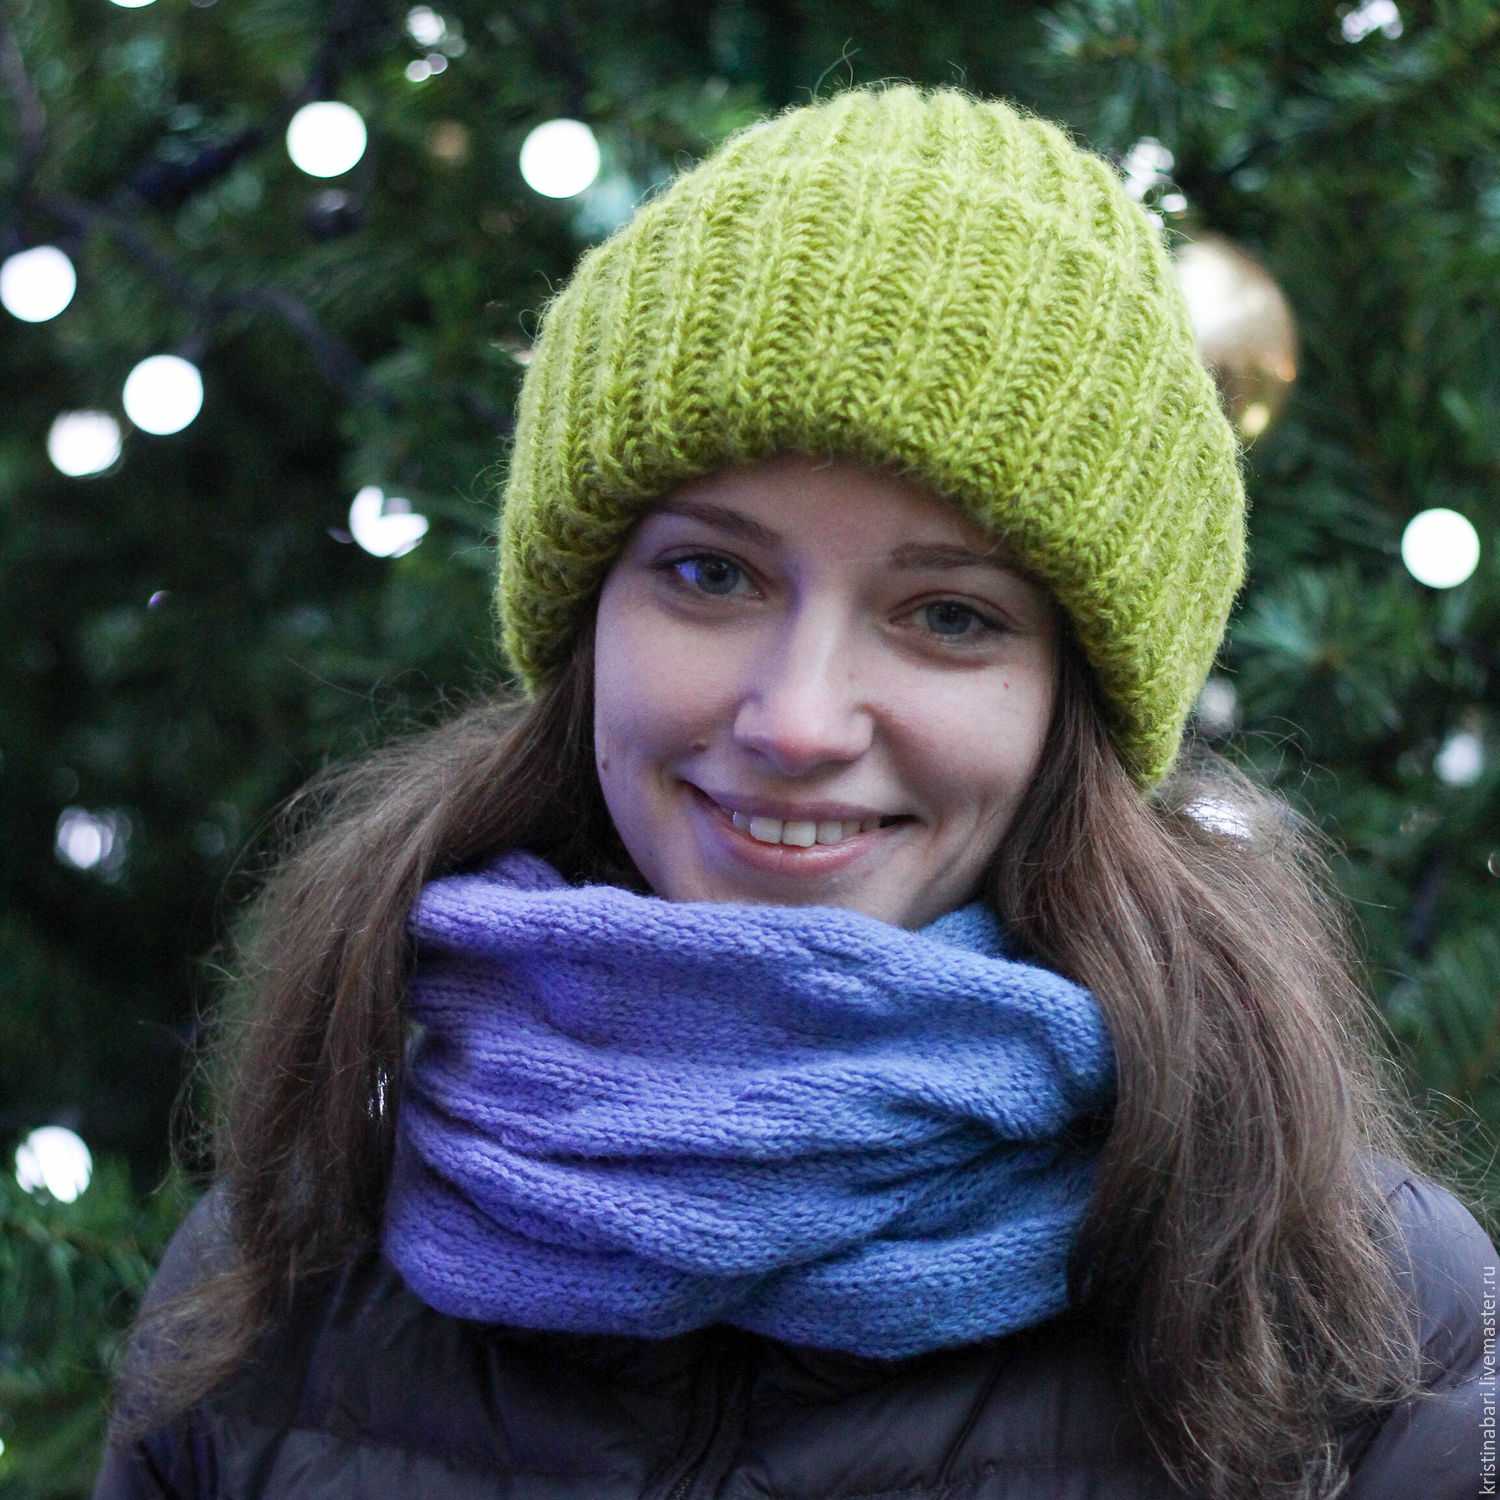 Как связать шапку спицами для женщины на зиму с отворотом английской резинкой видео